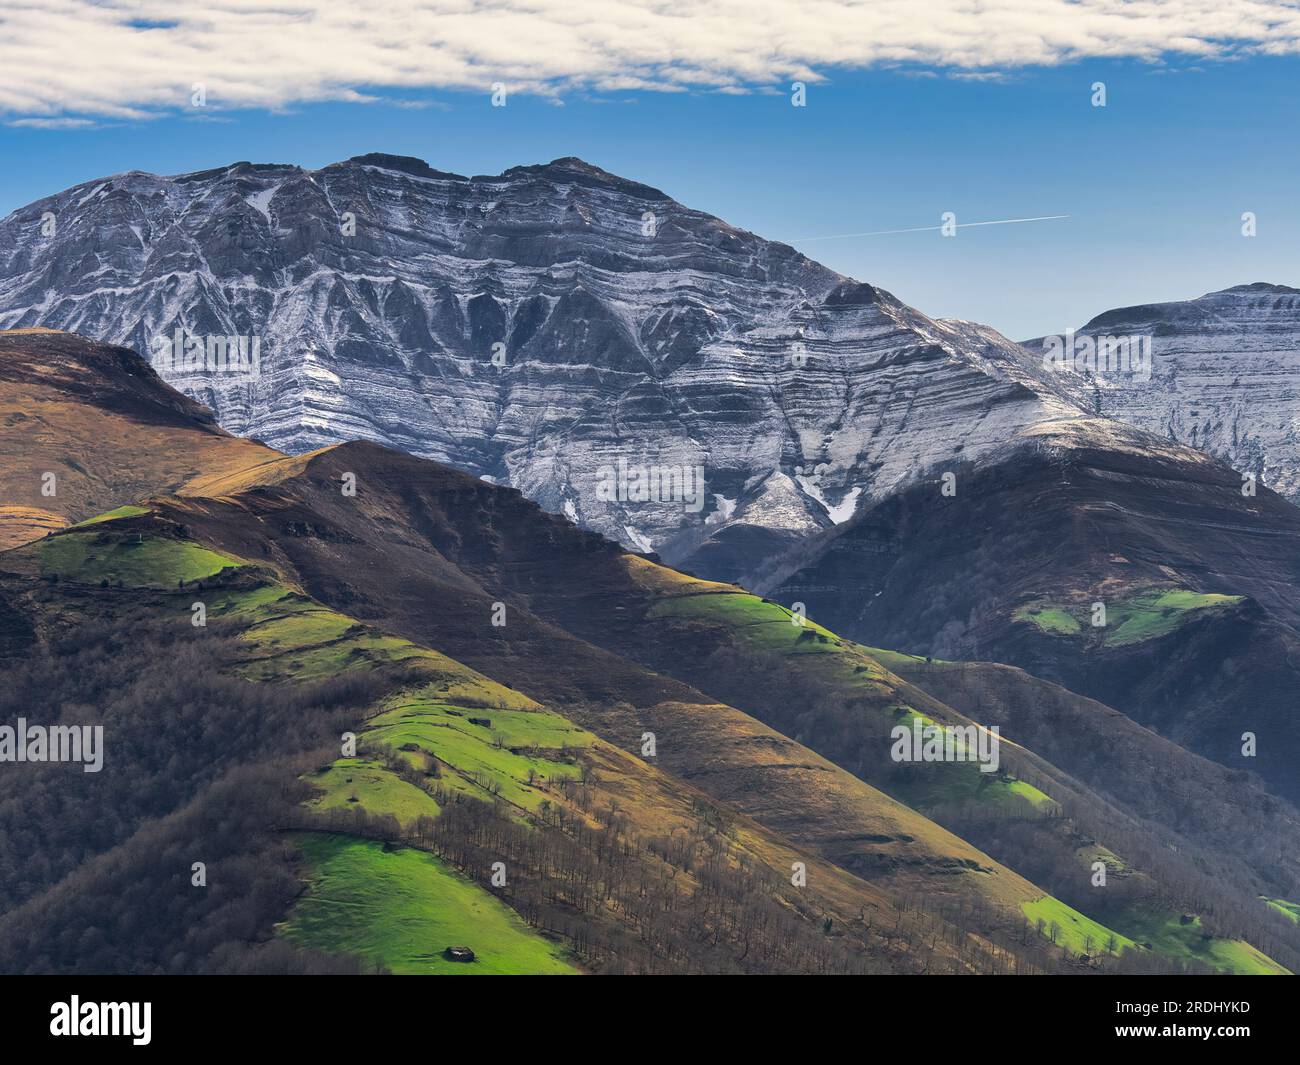 Castro Valnera mit einer Höhe von 1718 m ist der höchste Berg in der Region Valles Pasiegos in Kantabrien. Eine wilde und majestätische Landschaft. Stockfoto